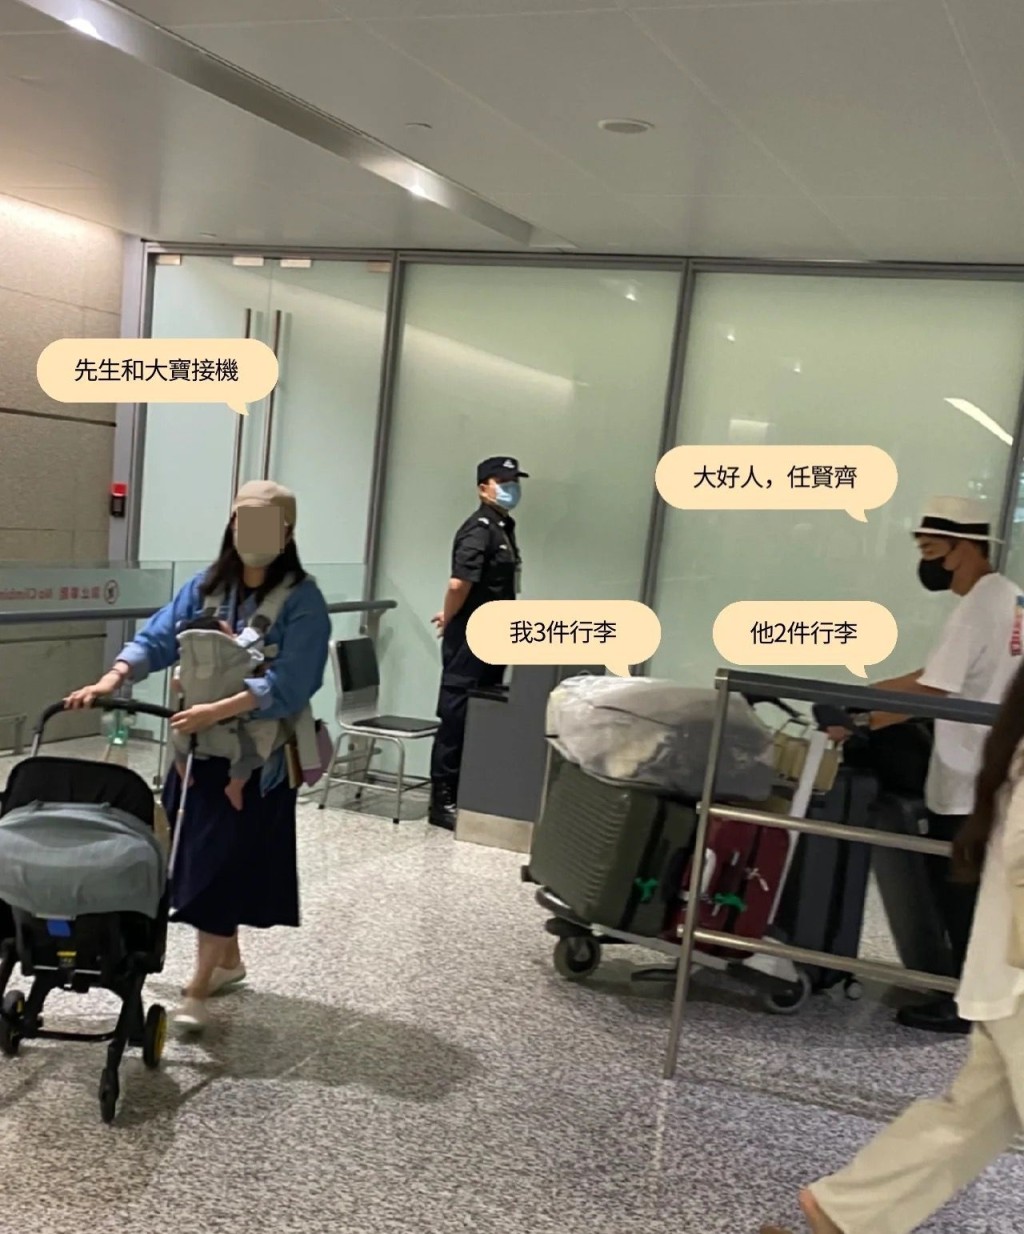 網民指任賢齊在機上幫她拎手提行李，仲陪她等拖運行李兼推出閘口。